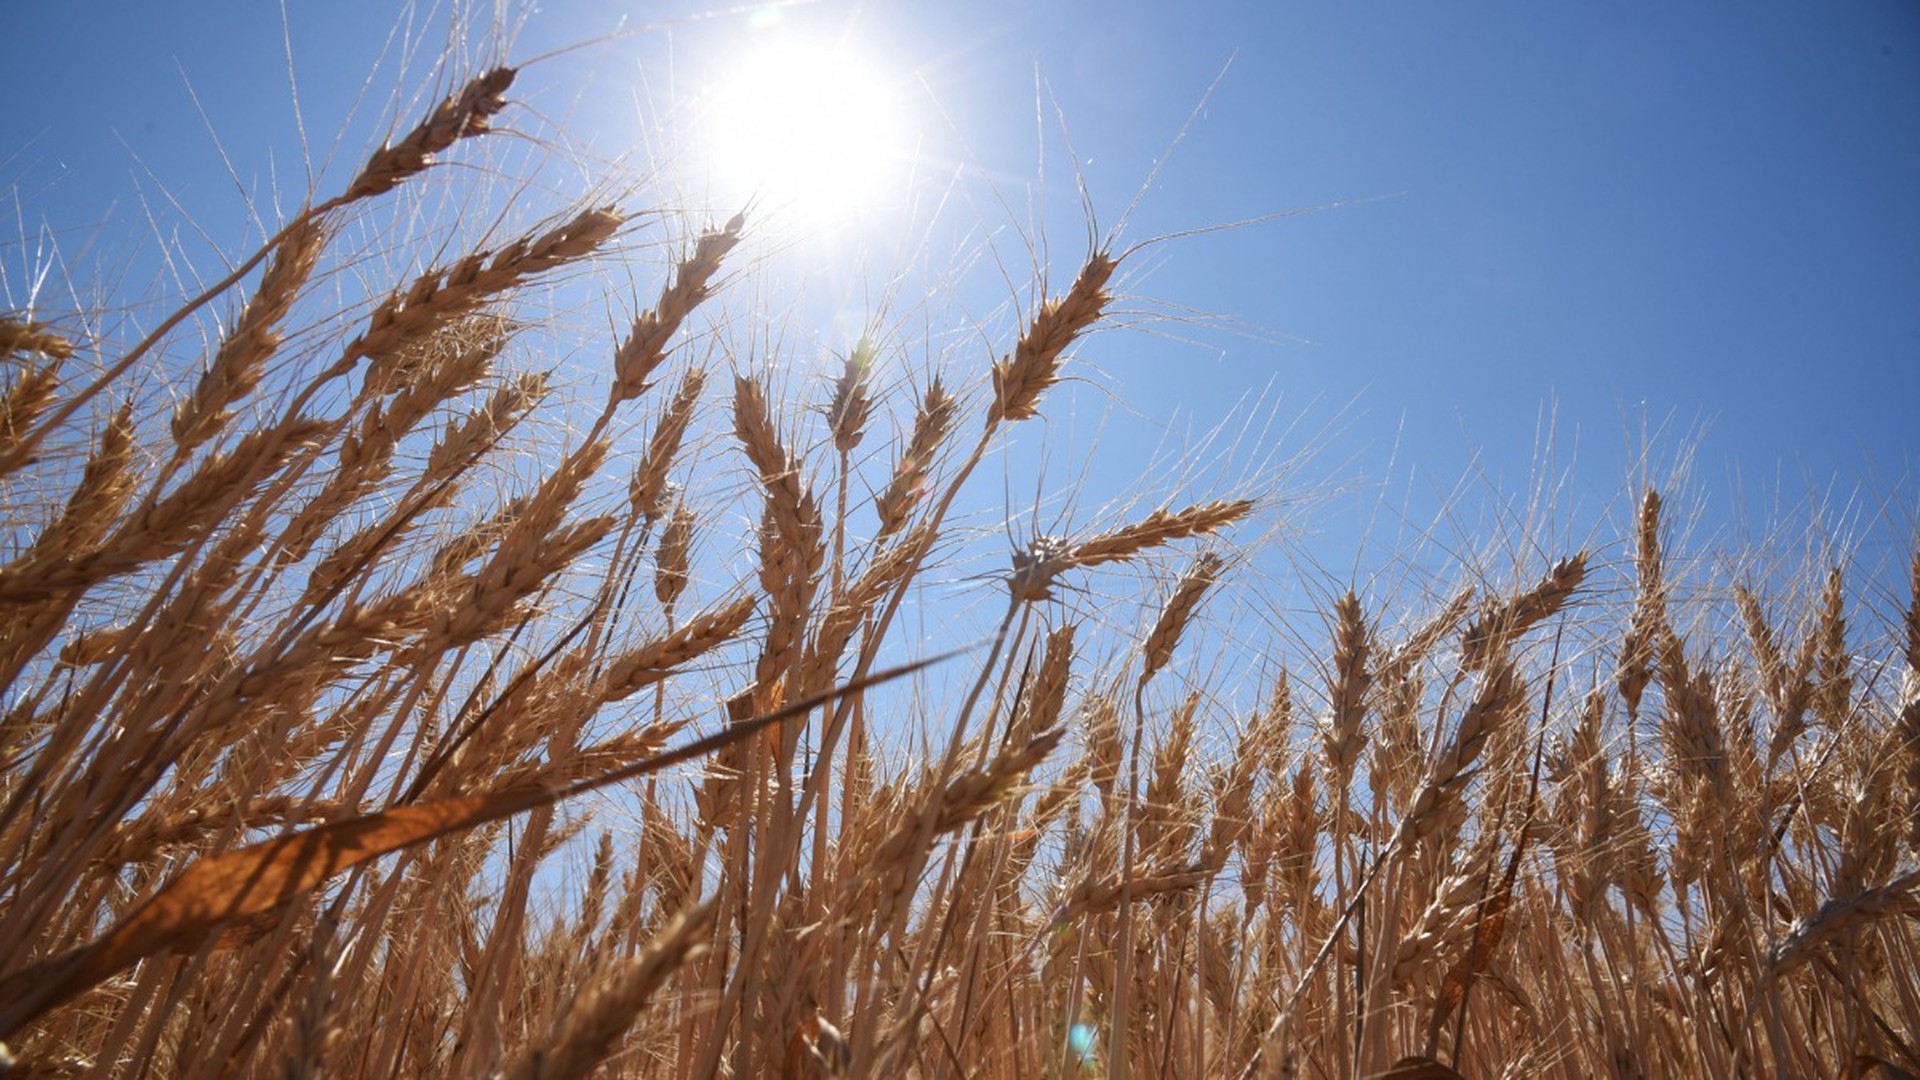 ООН: Беднейшие страны получили лишь 40% пшеницы и 10% кукурузы по зерновой сделке